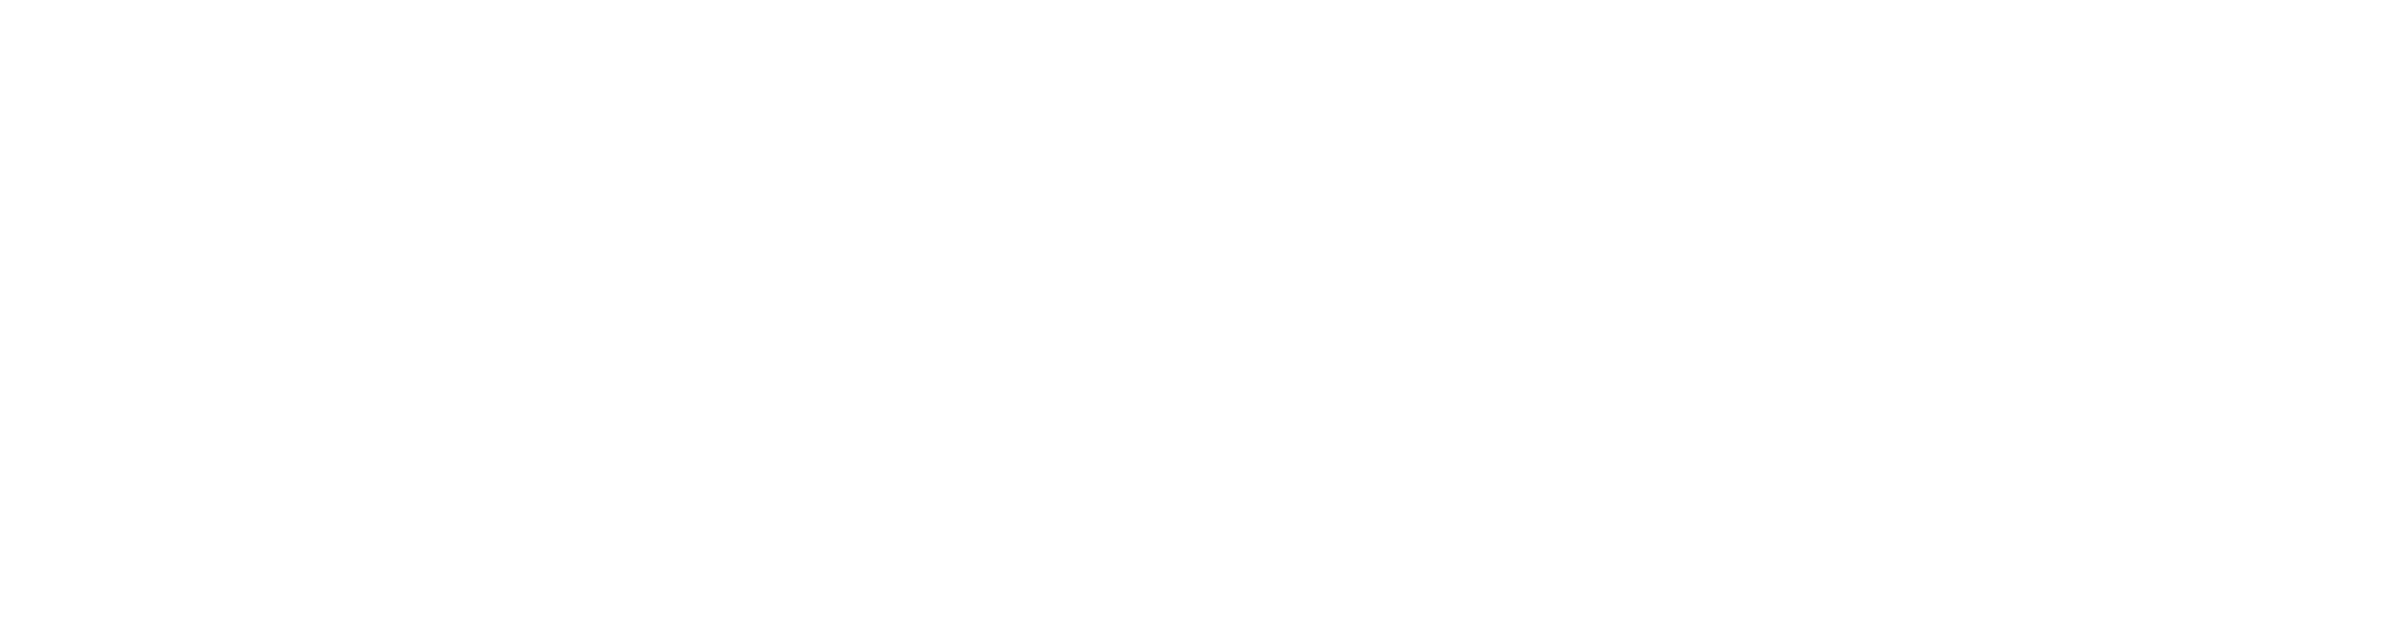 Warmbo LLC